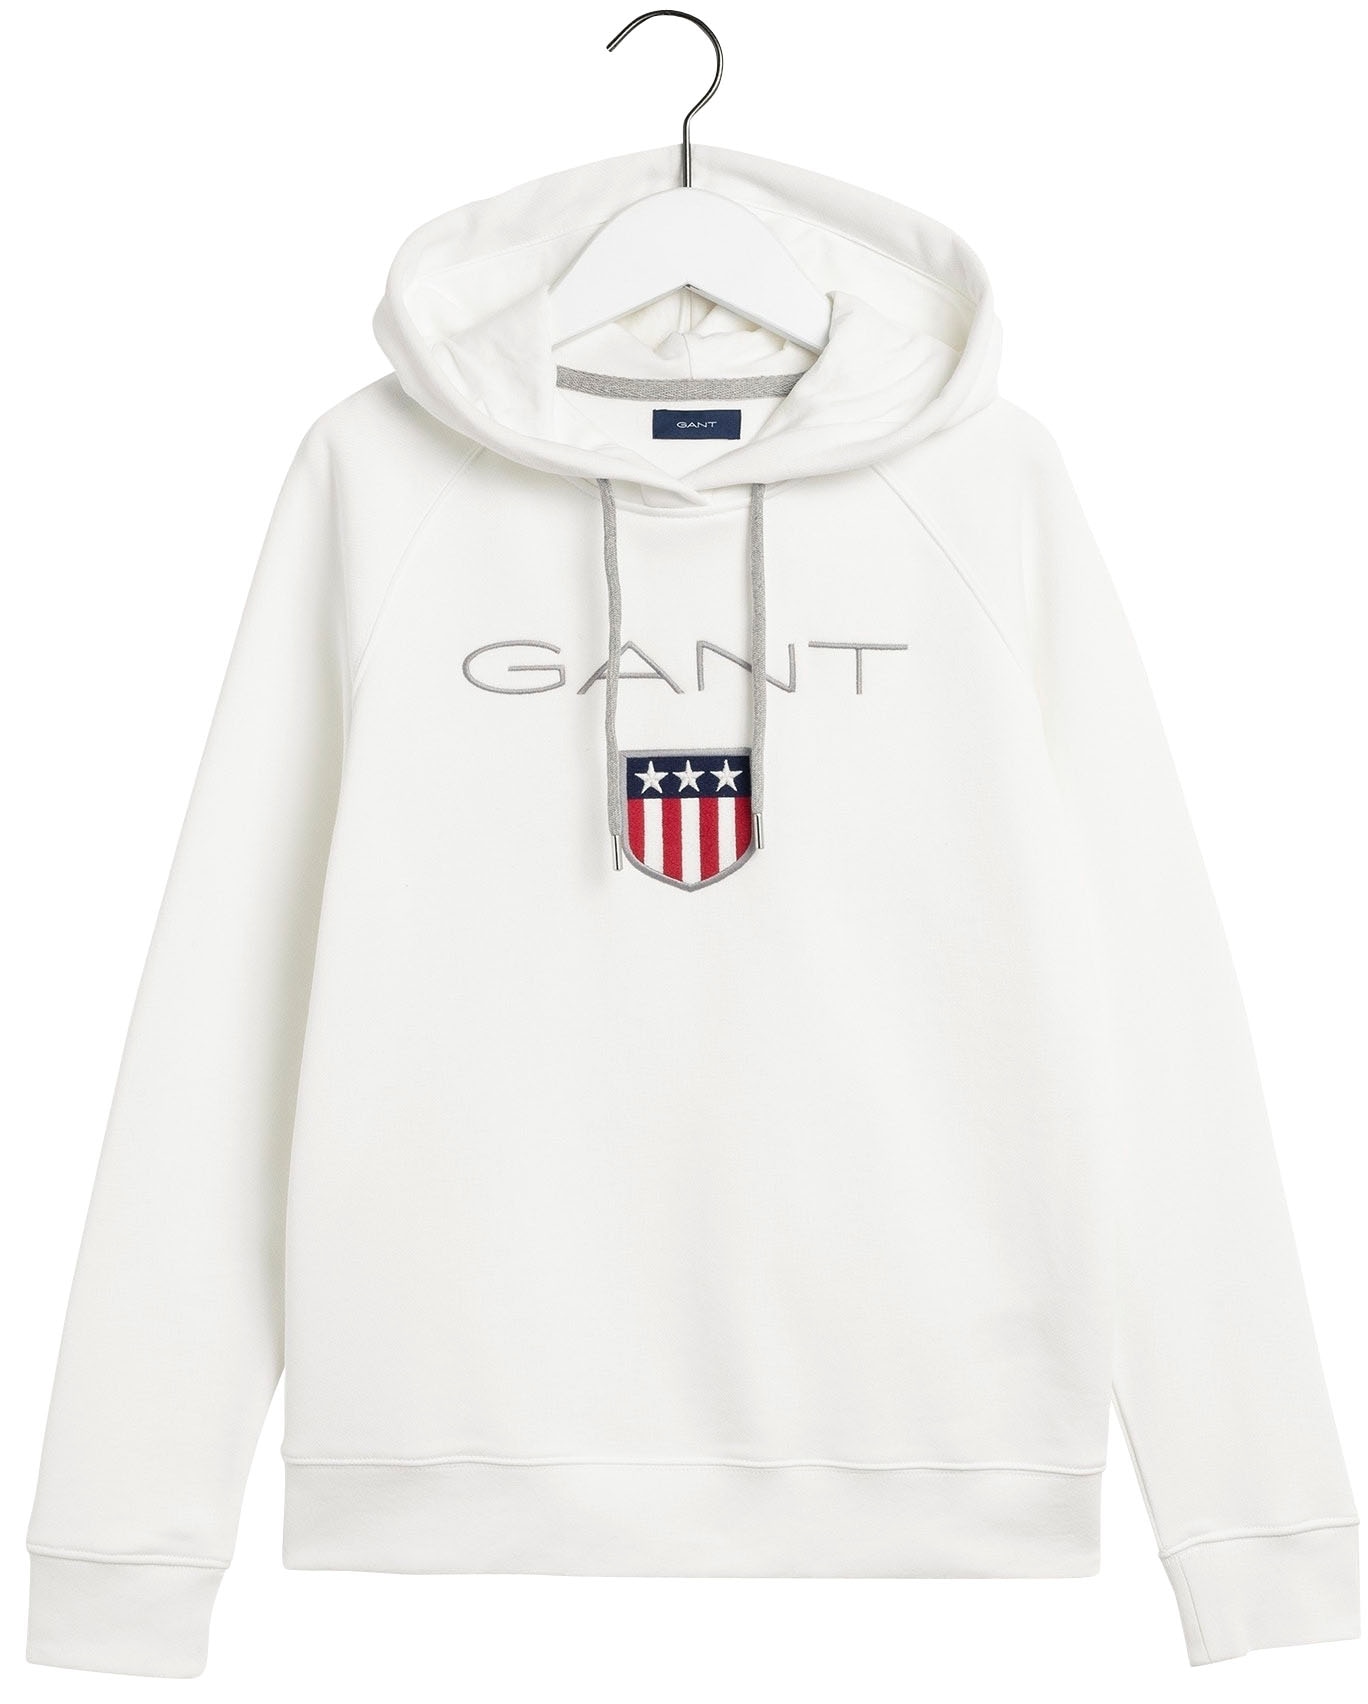 »GANT BAUR großer mit Gant Sweatshirt bestellen vorne SWEAT Label-Applikation HOODIE«, | SHIELD